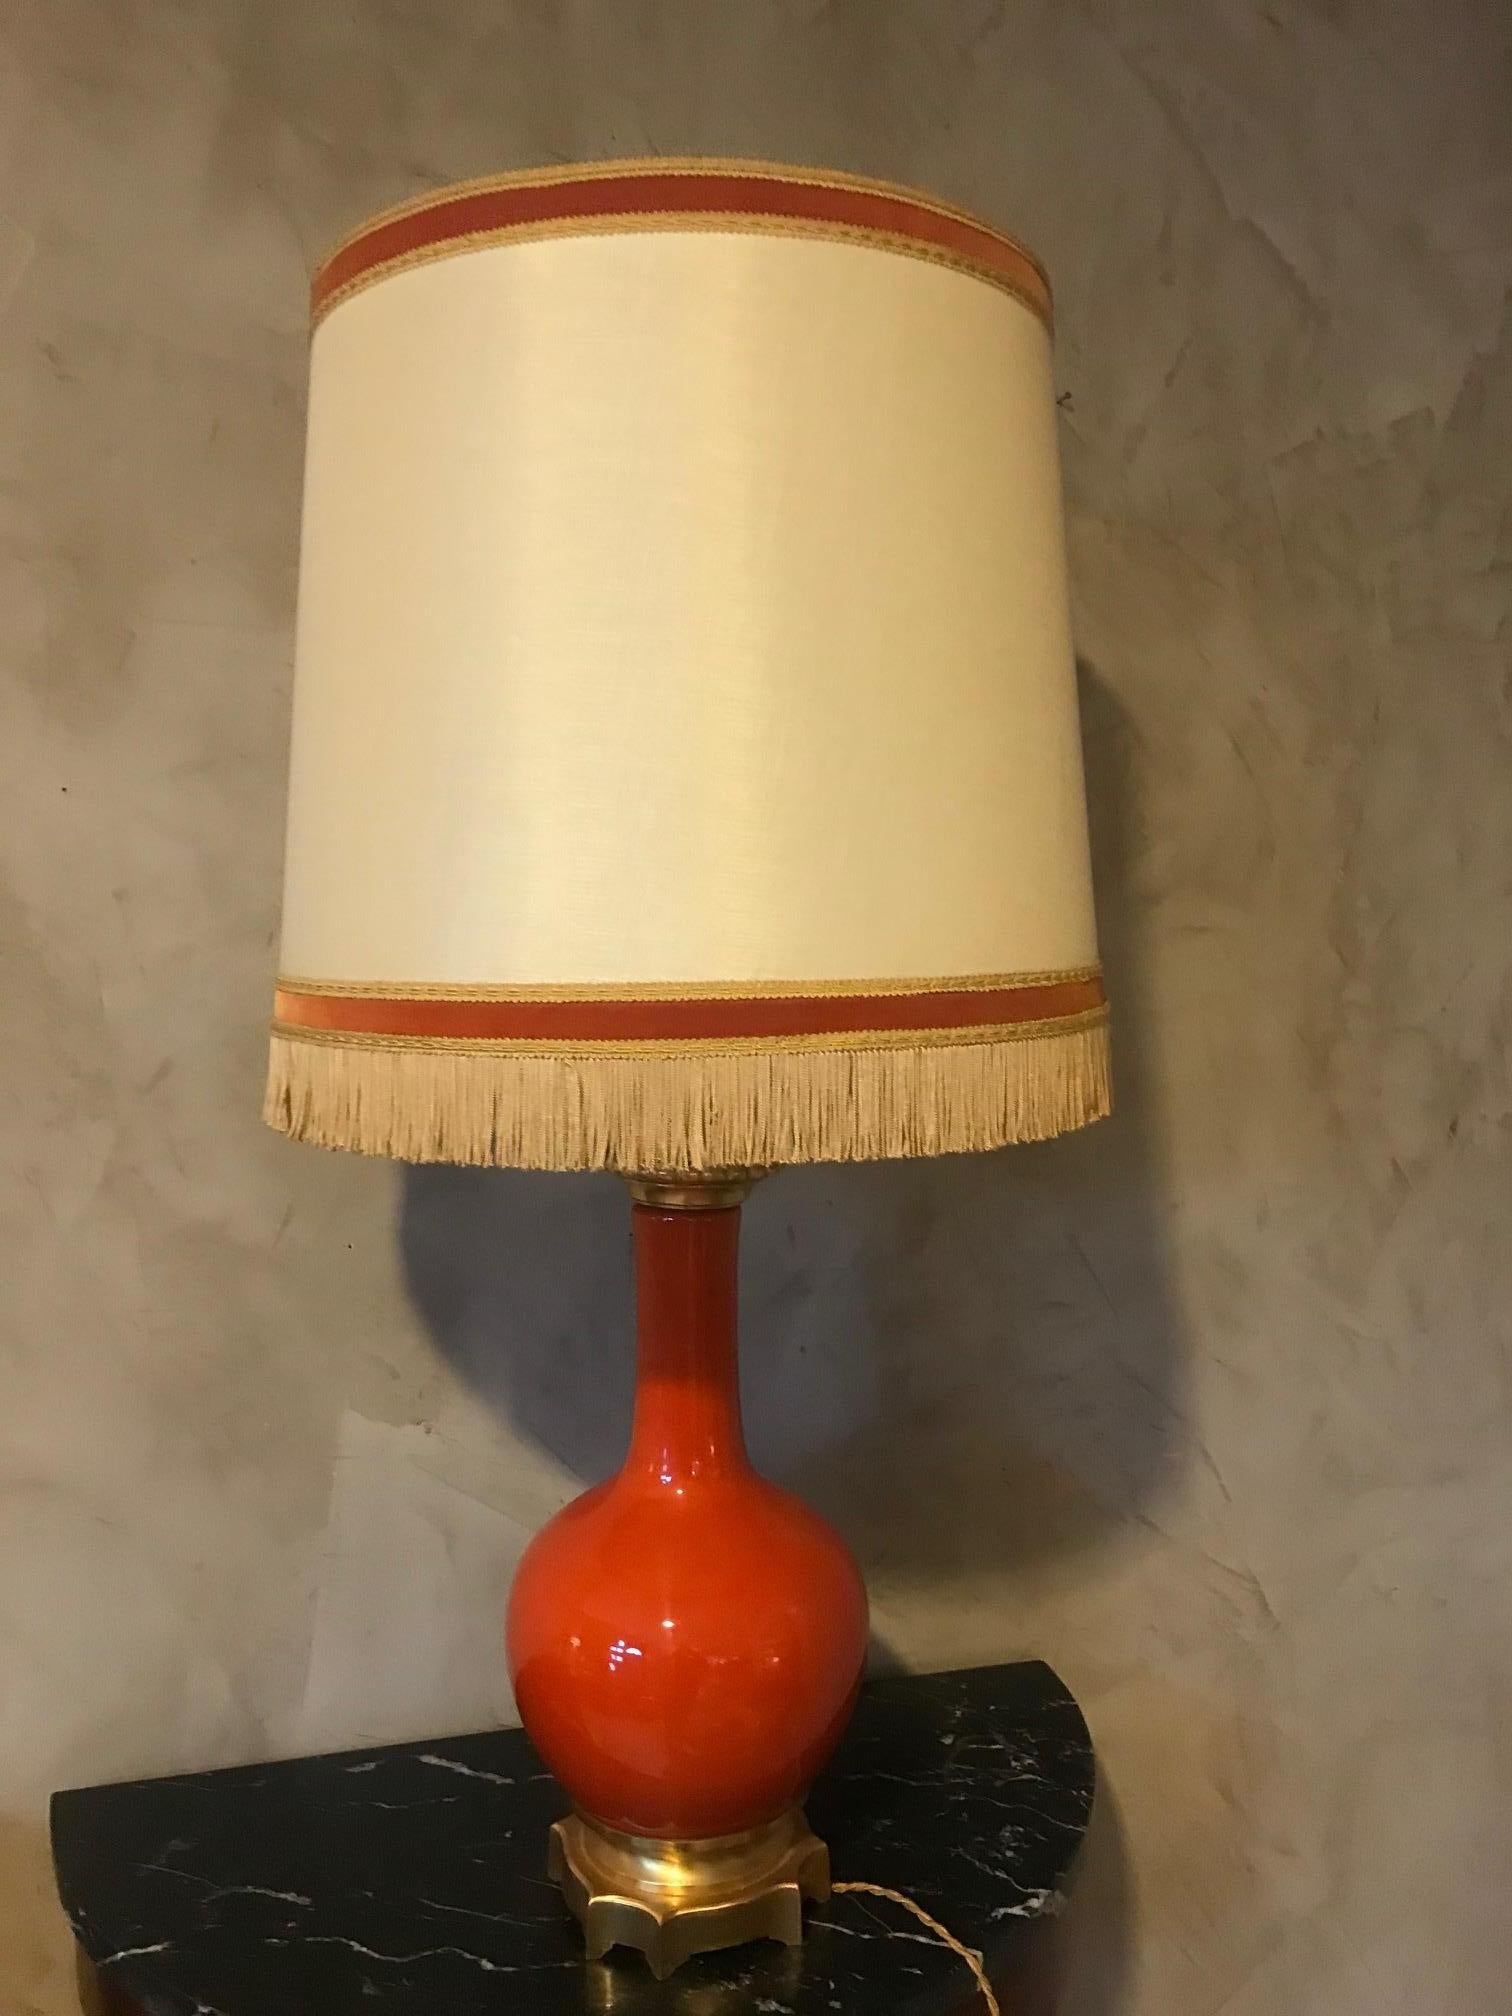 Magnifique lampe de table en verre opalin orange et laiton du 20e siècle, datant des années 1920. 
Bel abat-jour à franges. Base en laiton doré. 
Bonne qualité et bon état.